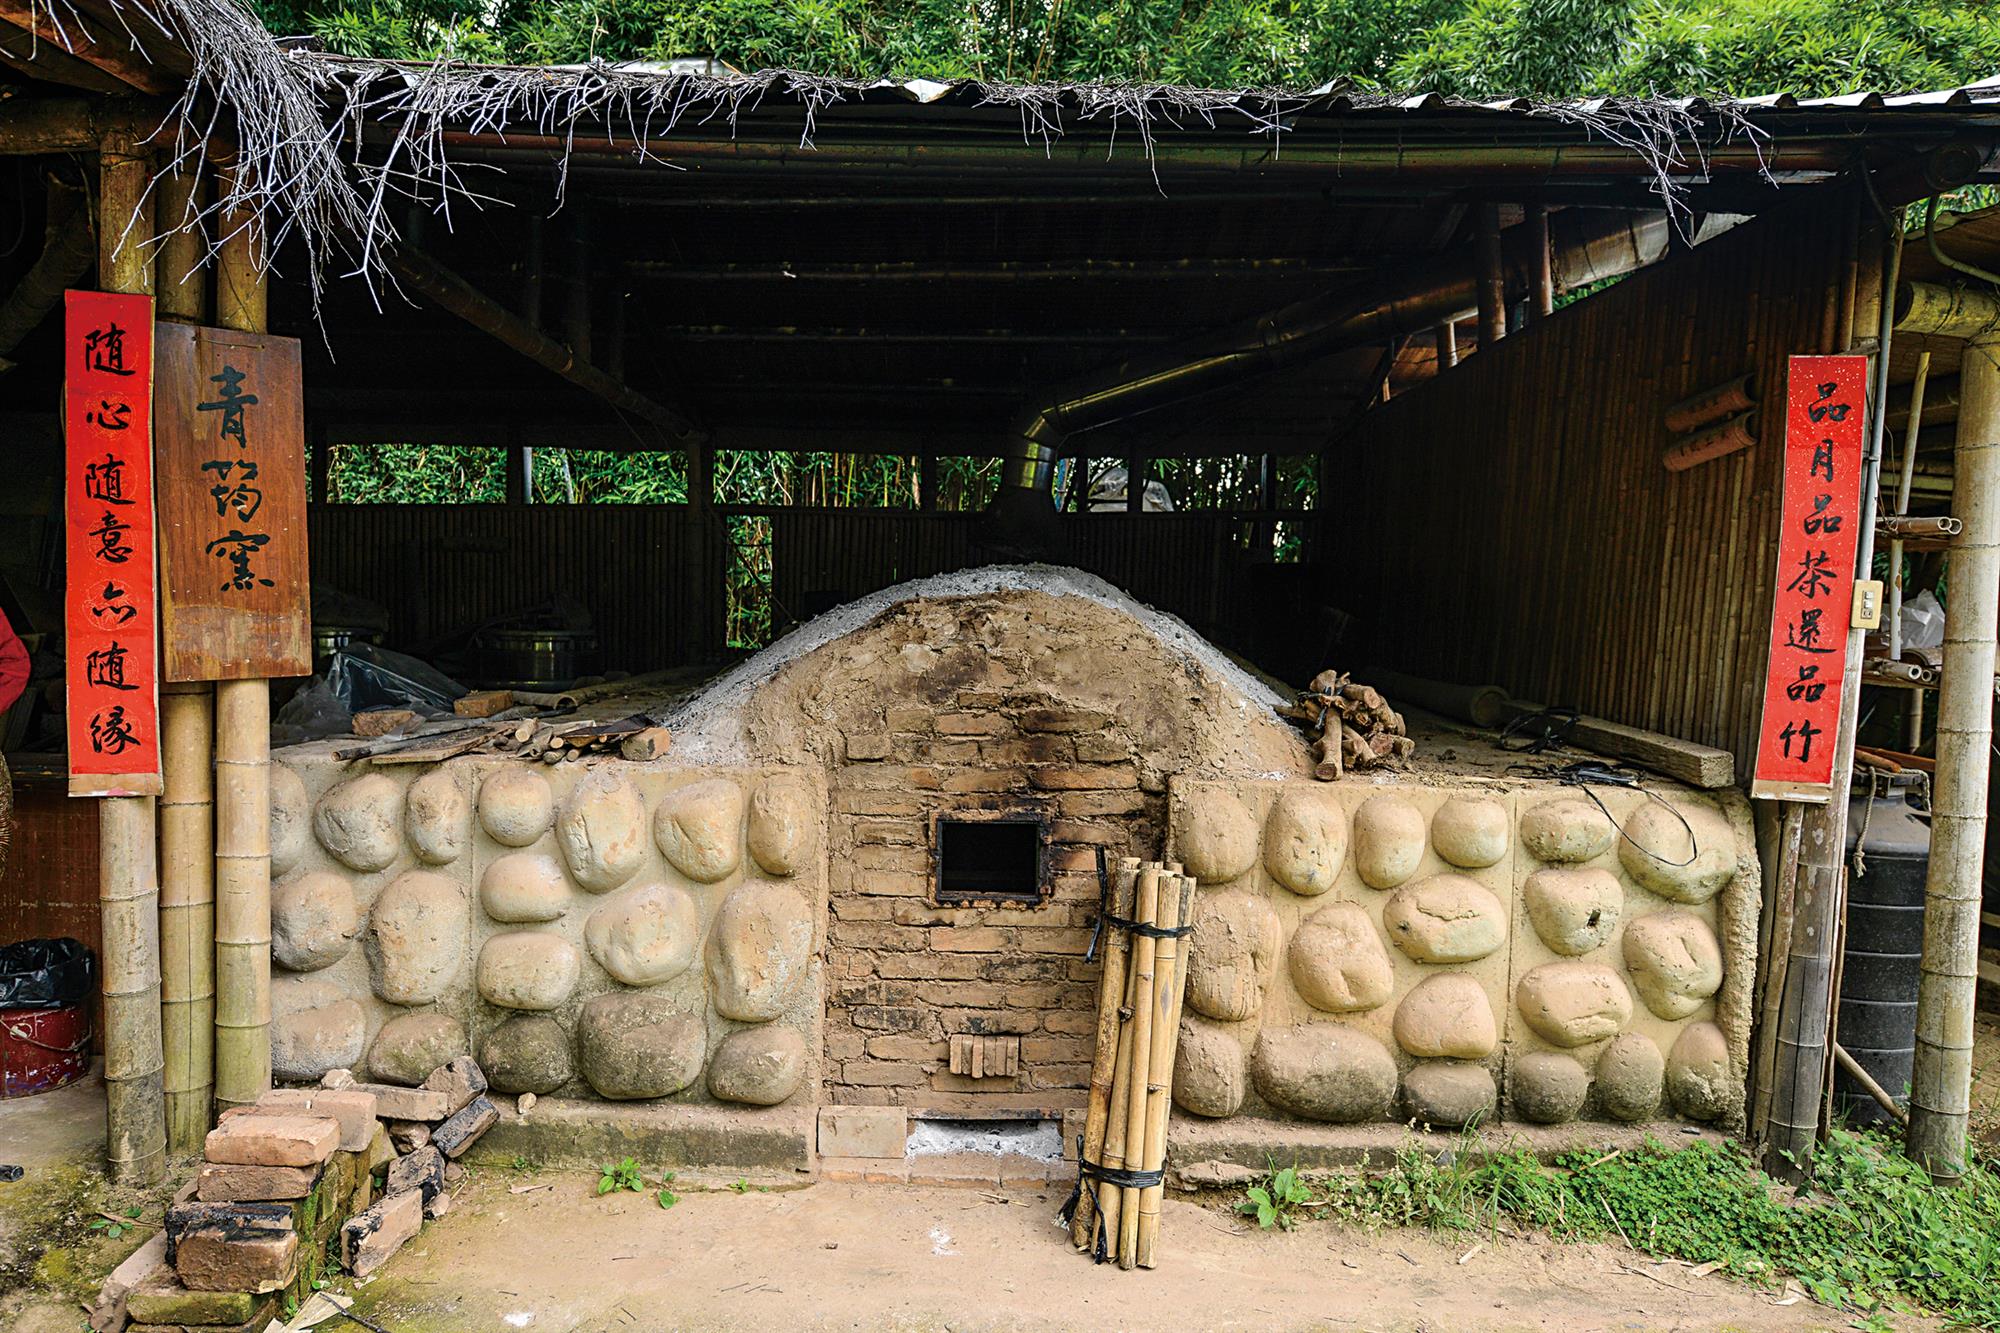 陳靖賦為保留竹文化創建了青竹文化園區，並打造青筠窯成為台灣竹炭燒製的前鋒。